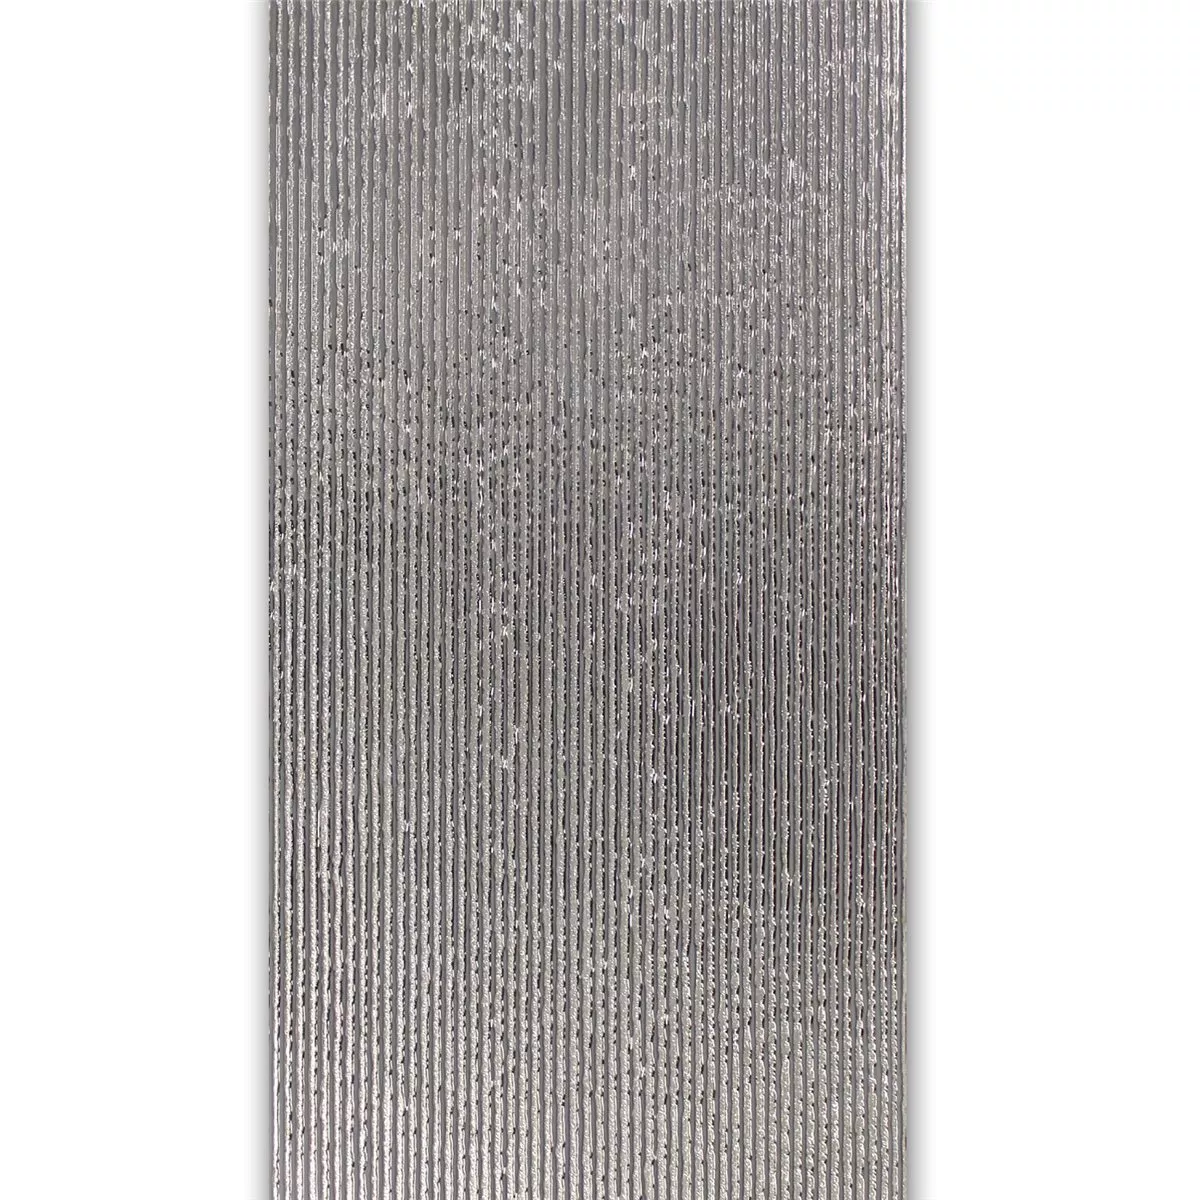 Διακόσμηση Τοίχου Πλακάκι Ασήμι 30x60cm